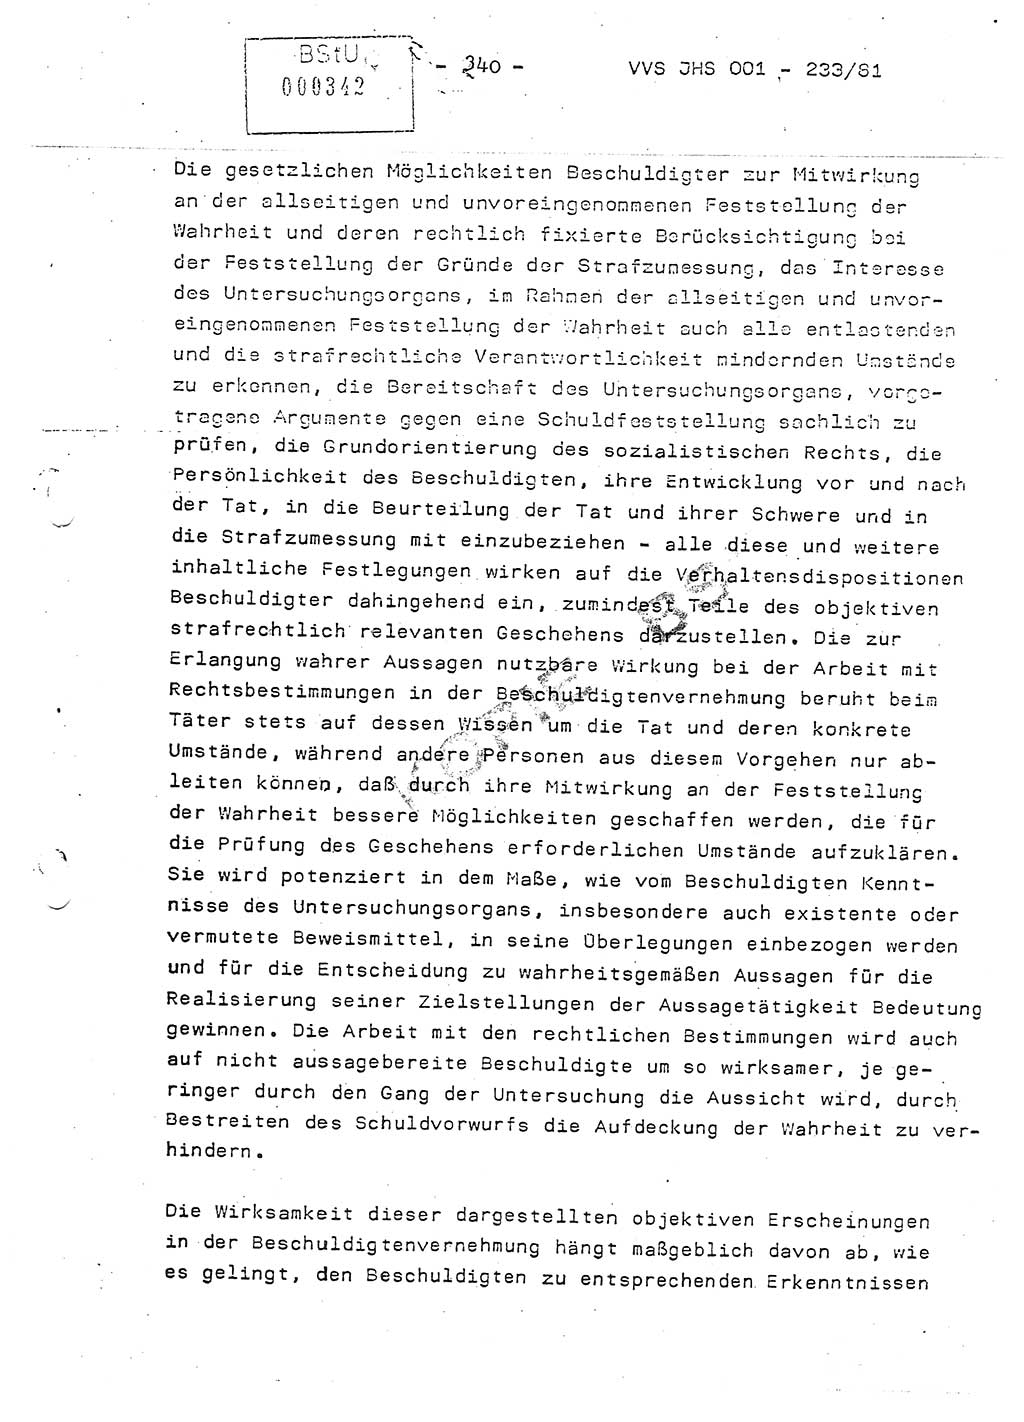 Dissertation Oberstleutnant Horst Zank (JHS), Oberstleutnant Dr. Karl-Heinz Knoblauch (JHS), Oberstleutnant Gustav-Adolf Kowalewski (HA Ⅸ), Oberstleutnant Wolfgang Plötner (HA Ⅸ), Ministerium für Staatssicherheit (MfS) [Deutsche Demokratische Republik (DDR)], Juristische Hochschule (JHS), Vertrauliche Verschlußsache (VVS) o001-233/81, Potsdam 1981, Blatt 340 (Diss. MfS DDR JHS VVS o001-233/81 1981, Bl. 340)